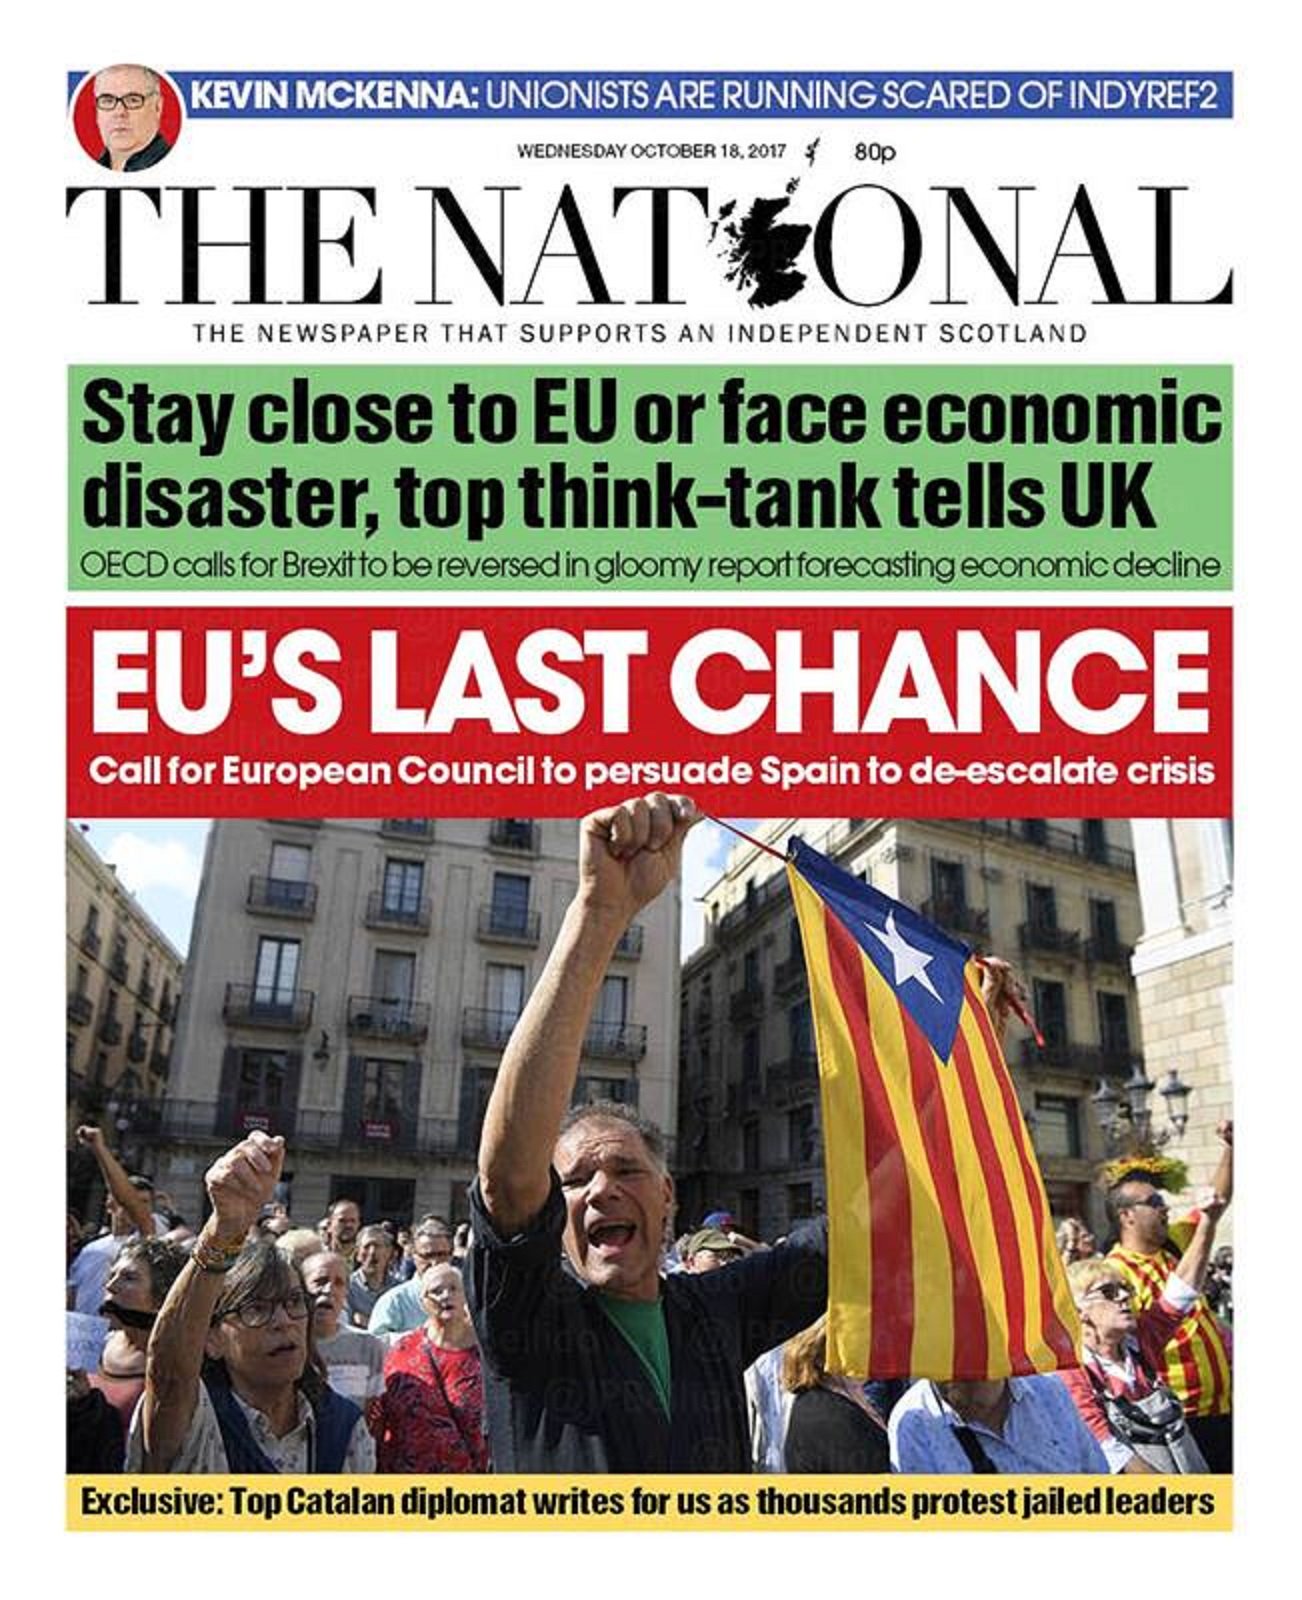 L'avís de 'The National' a la seva portada: "És l'última oportunitat de la UE amb Catalunya"